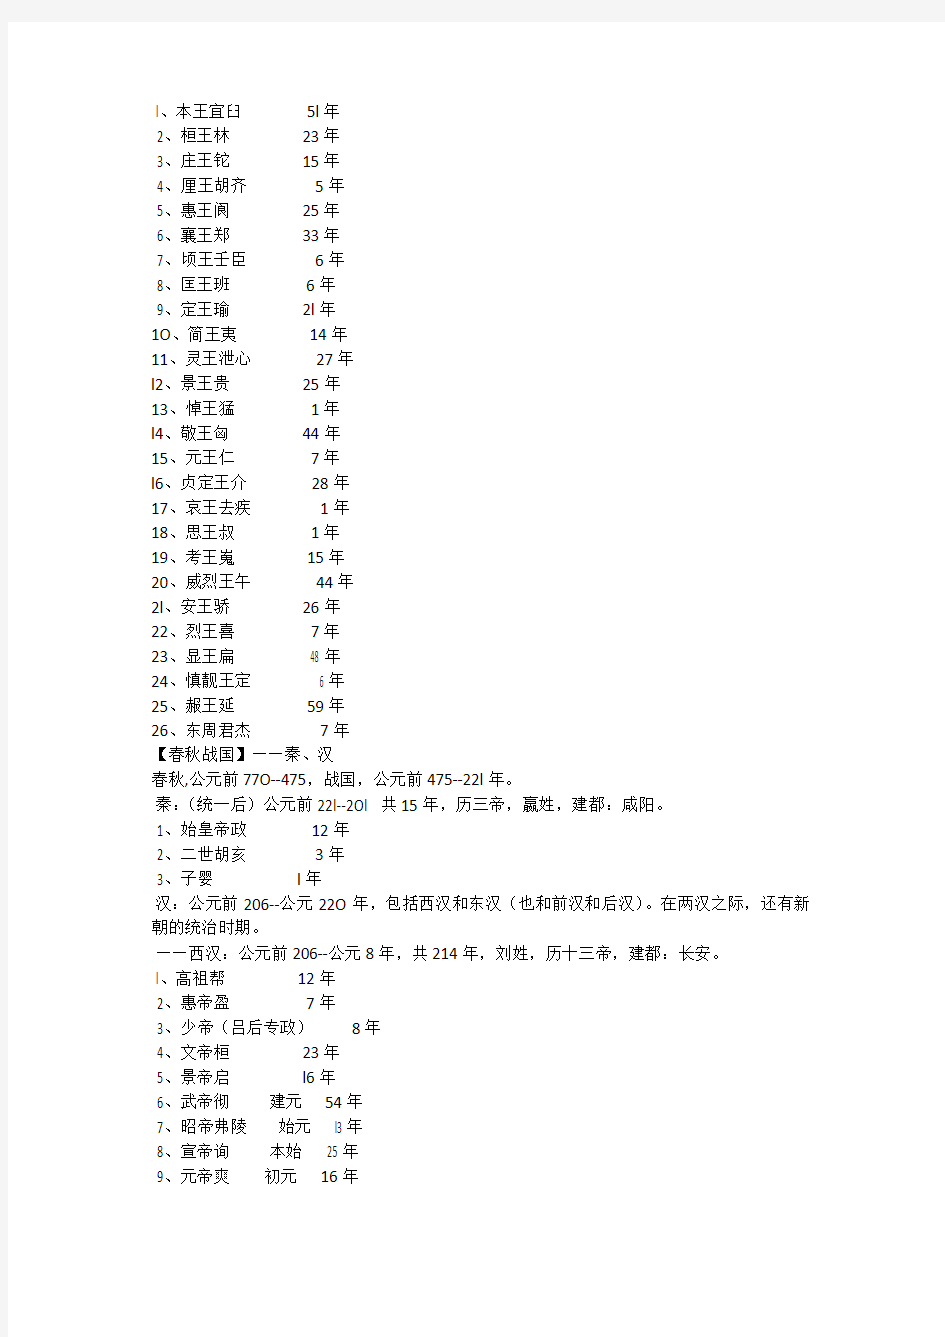 中国历史朝代顺序表以及各朝皇帝的顺序